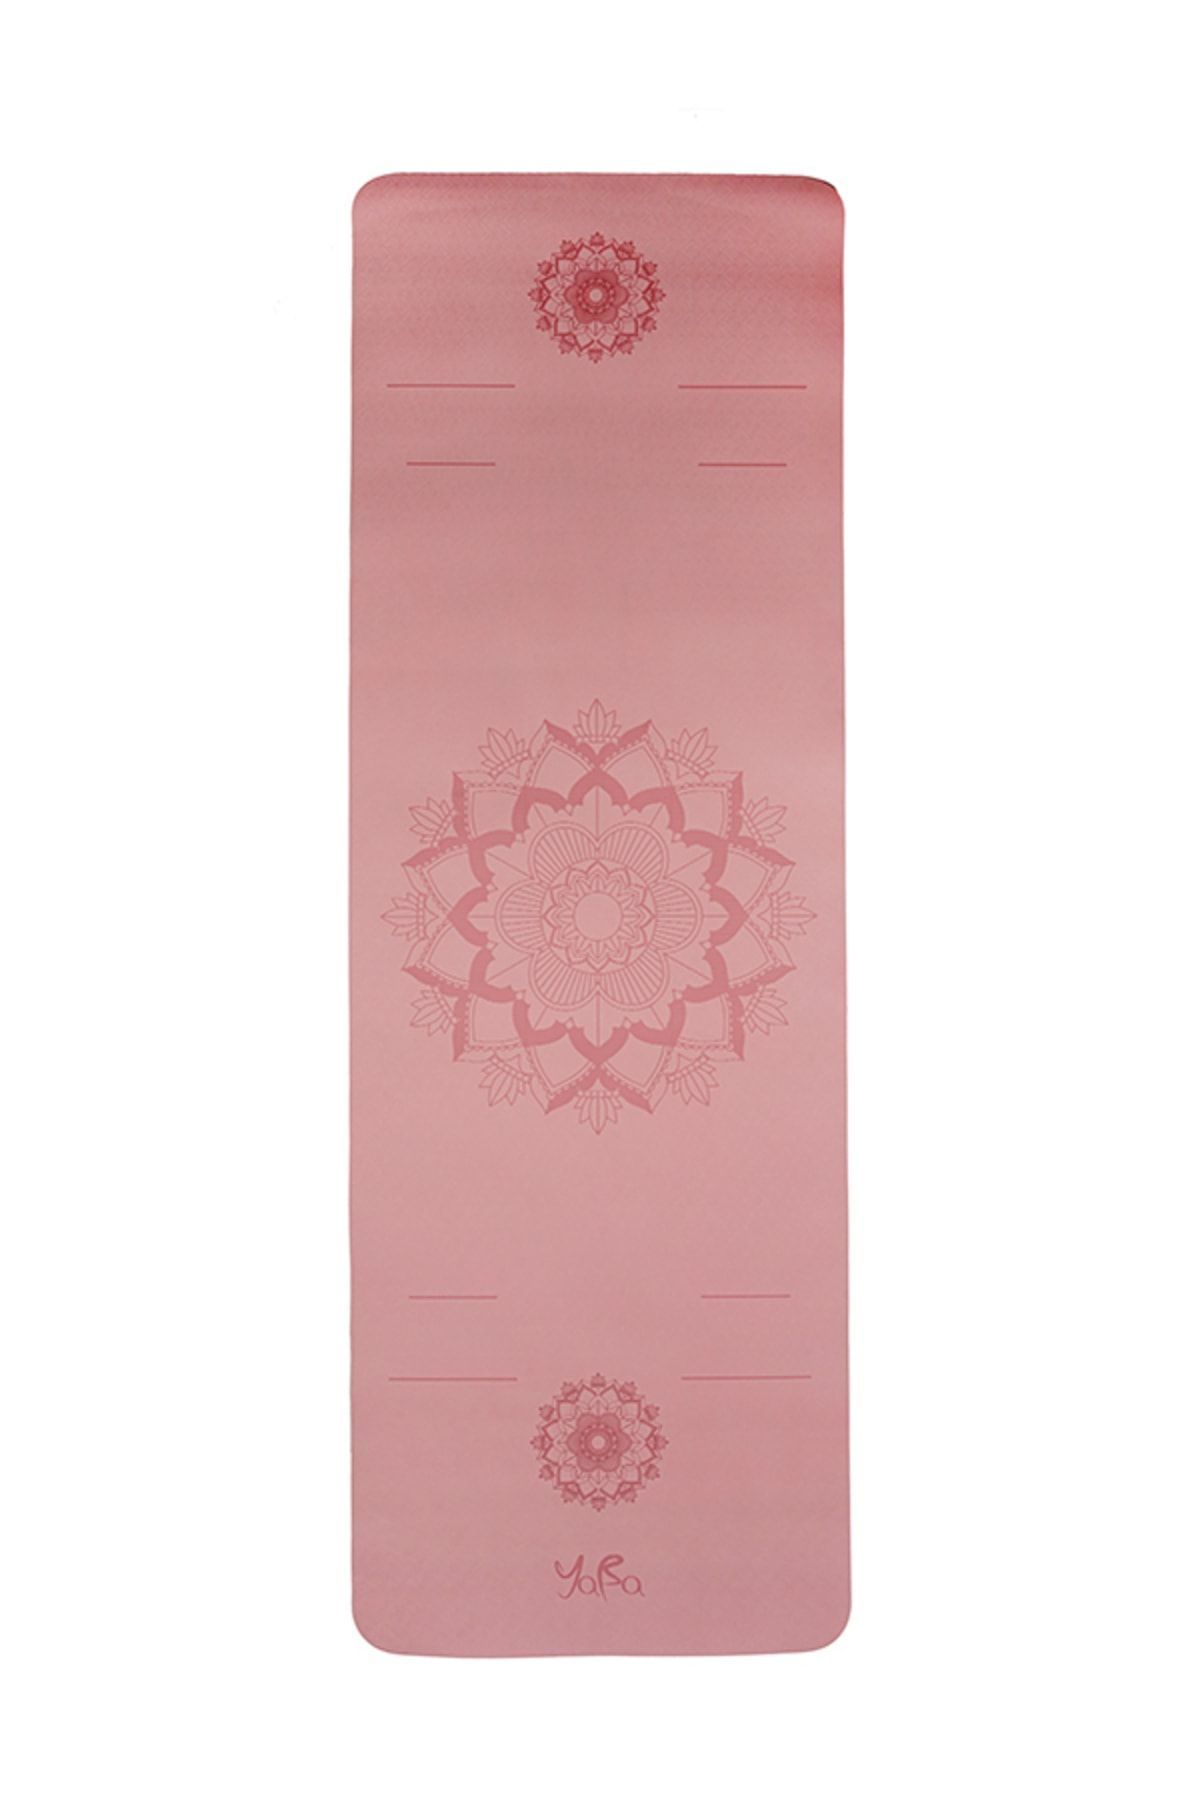 YABA Tpe Yoga Matı 6mm Pilates Matı Çiçek 183*61*0.6cm